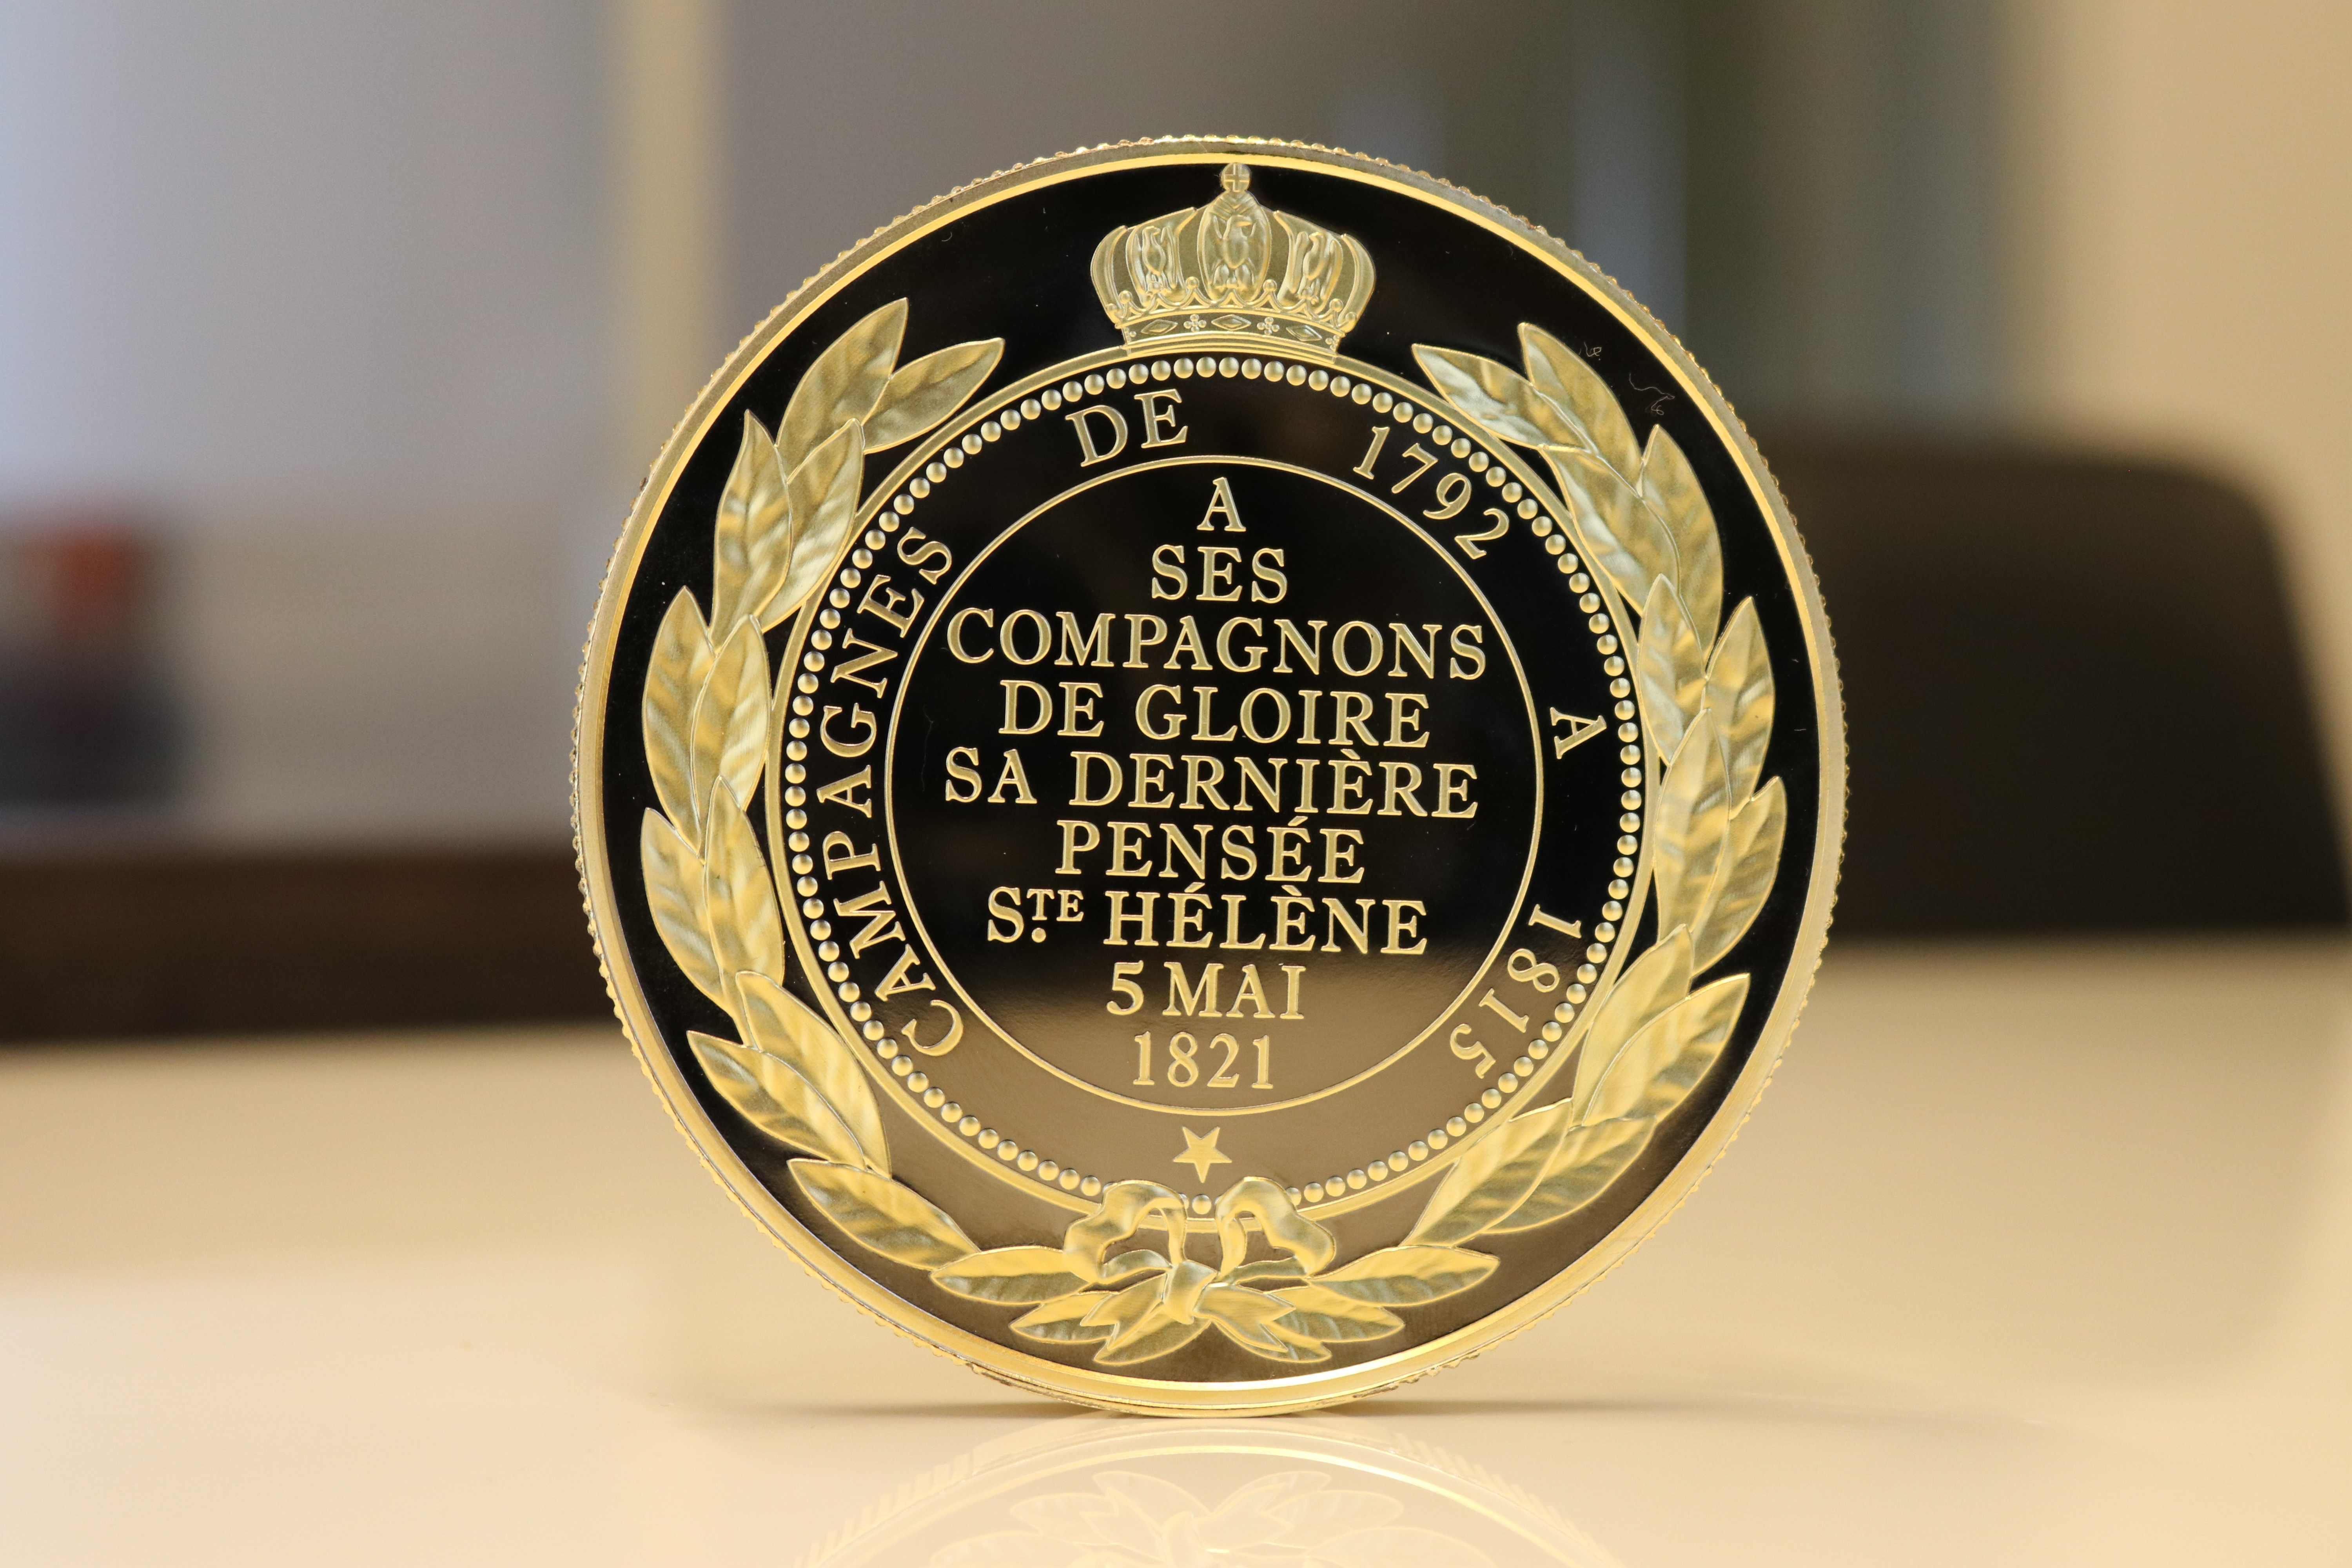 Skt. Helena war gigant medalje – Napoleon I